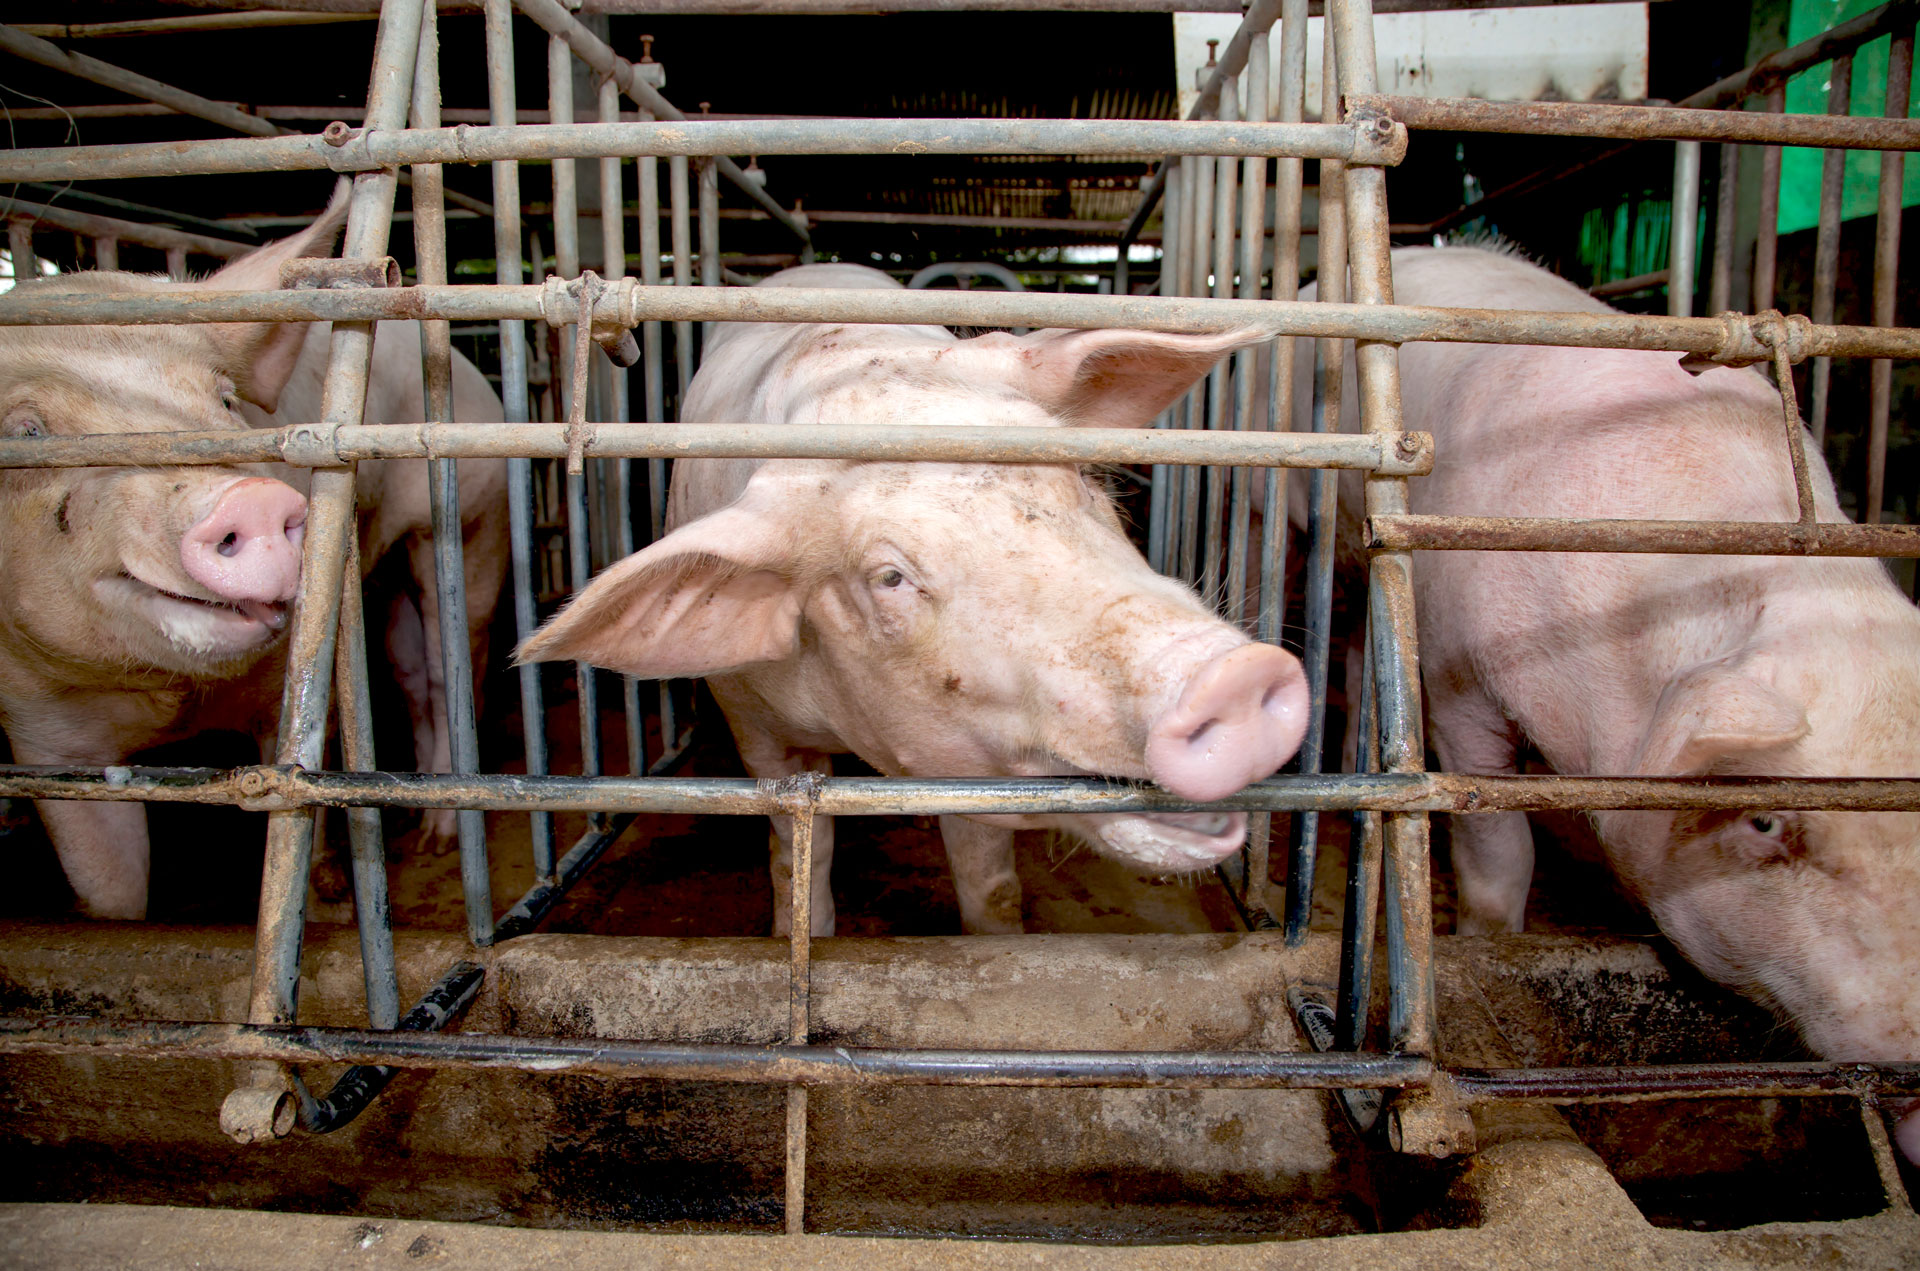 Ag-Gag Laws Help Hide Animal Abuse - FoodPrint